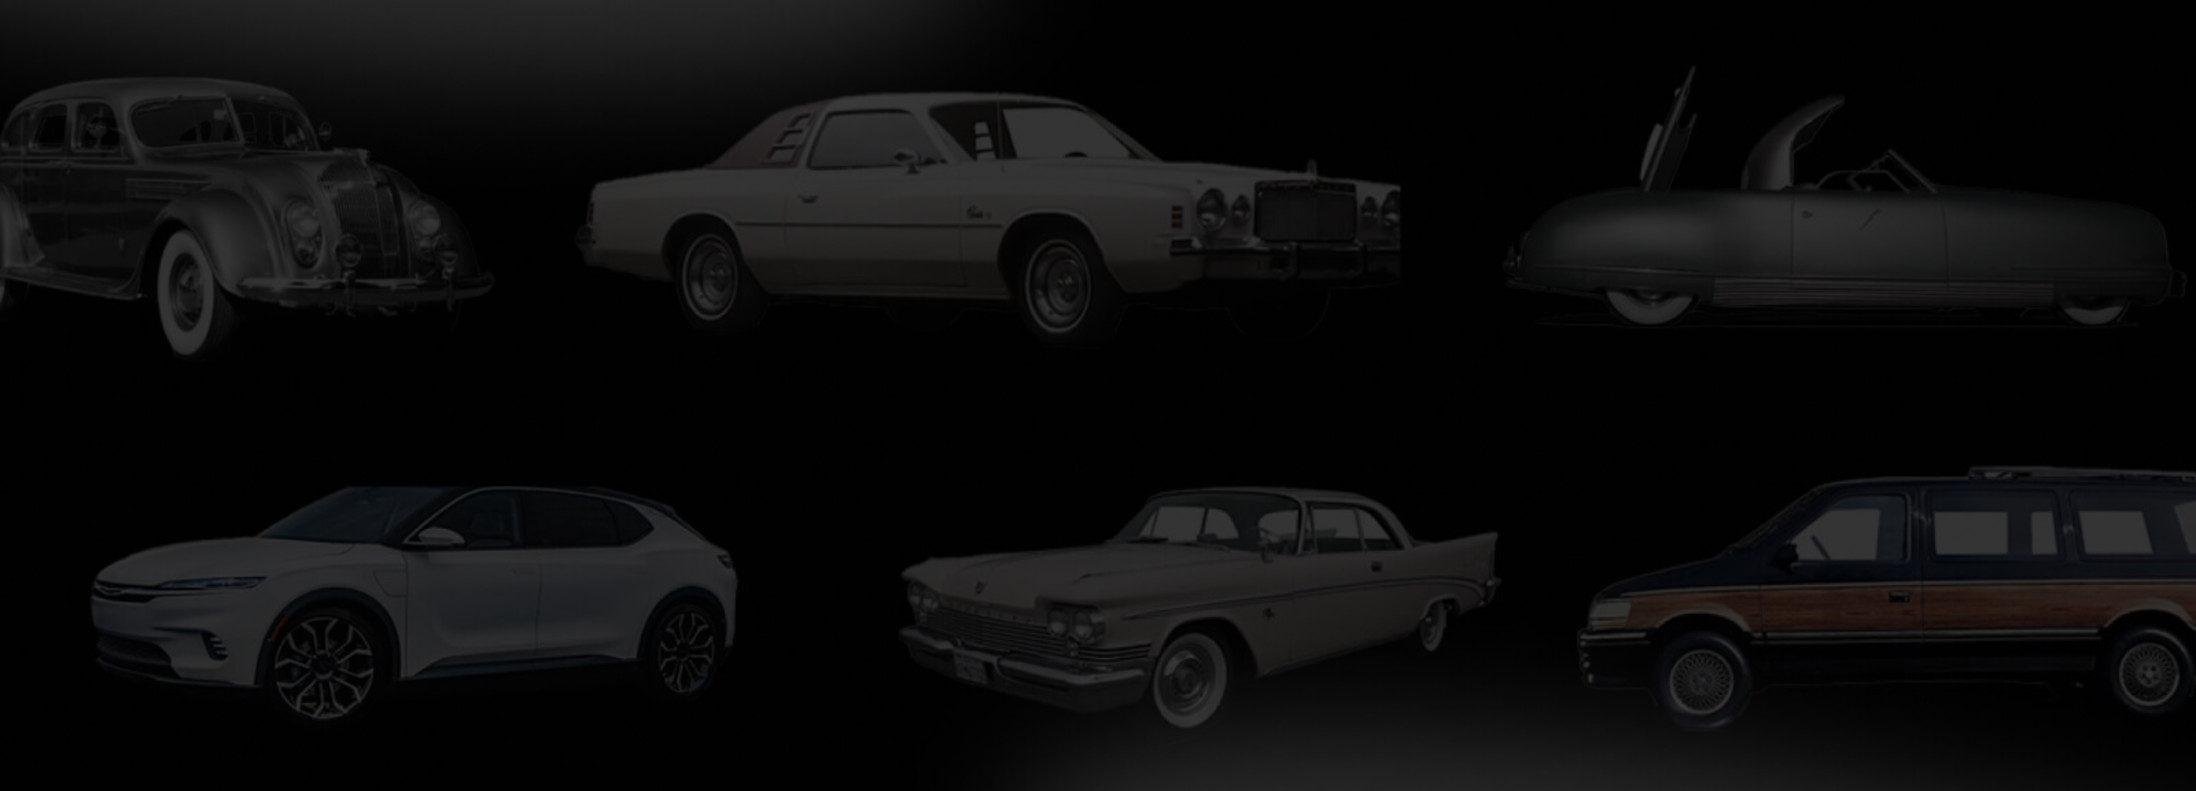 Un collage de différents modèles de voitures Chrysler dans un décor sombre.